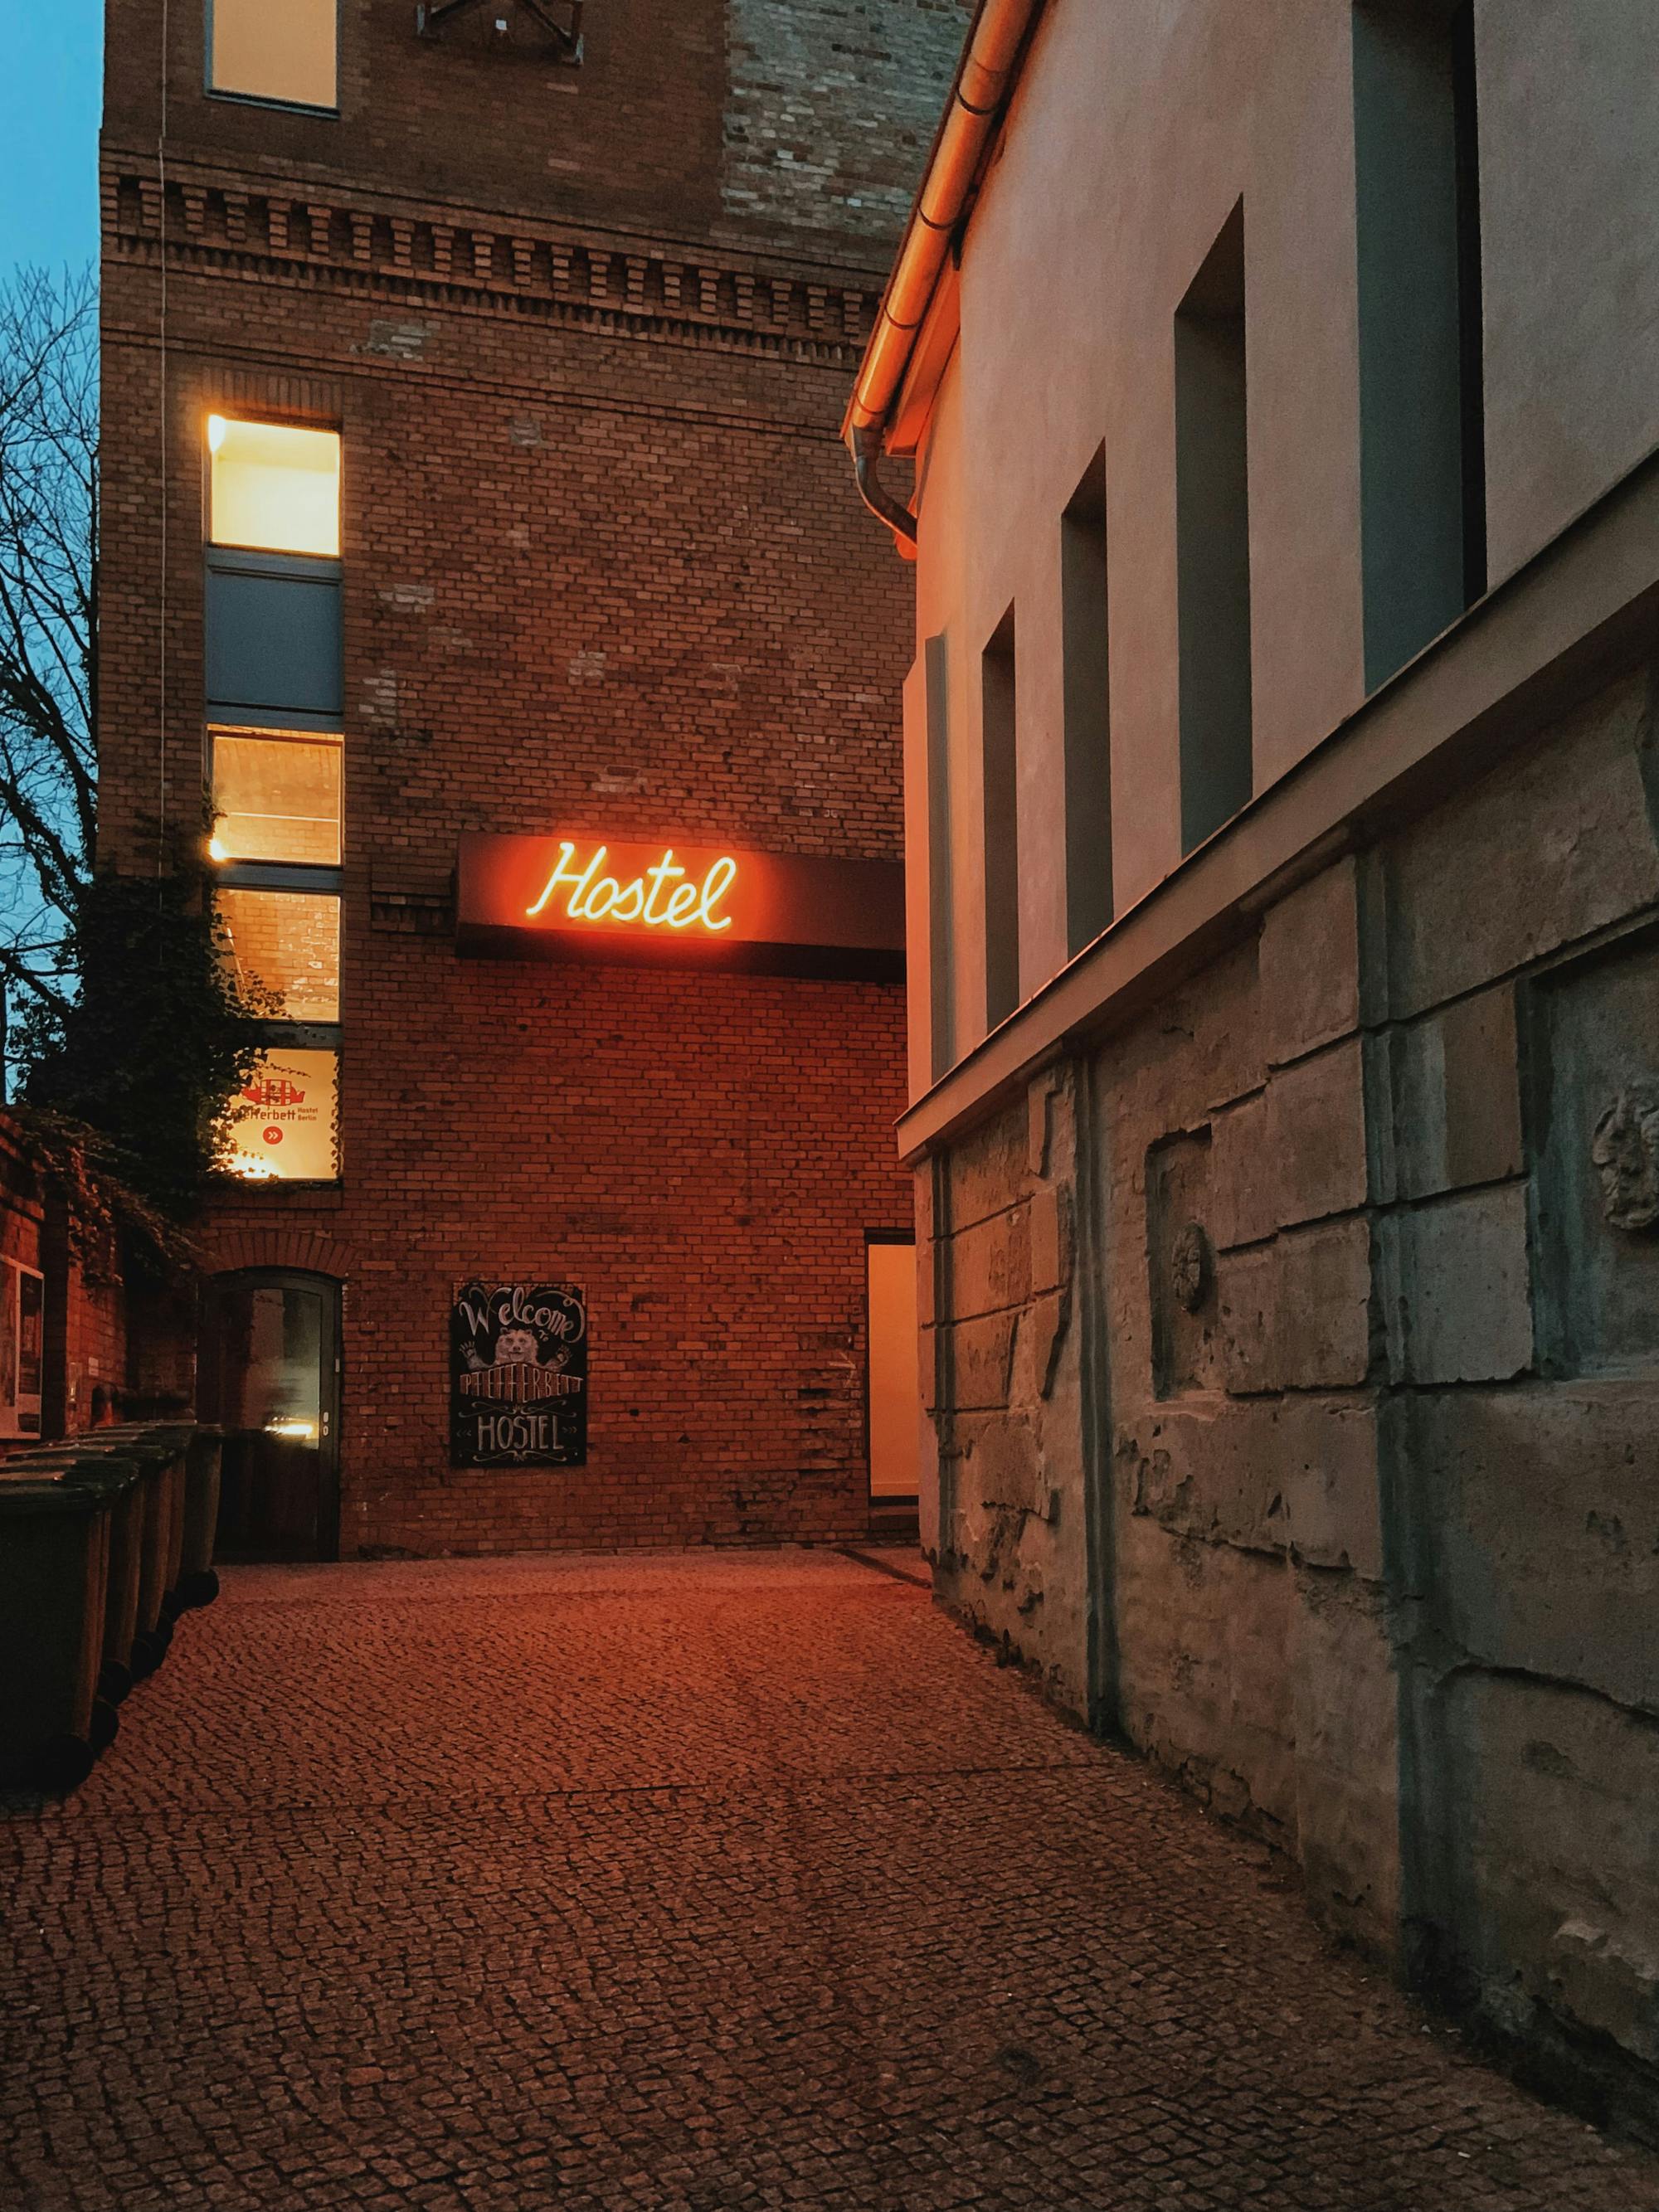 In der Hintergasse befindet sich an der Hausfassade eines alten Gebäudes ein roter, neonfarbiger Schriftzug mit der Aufschrift "Hostel"